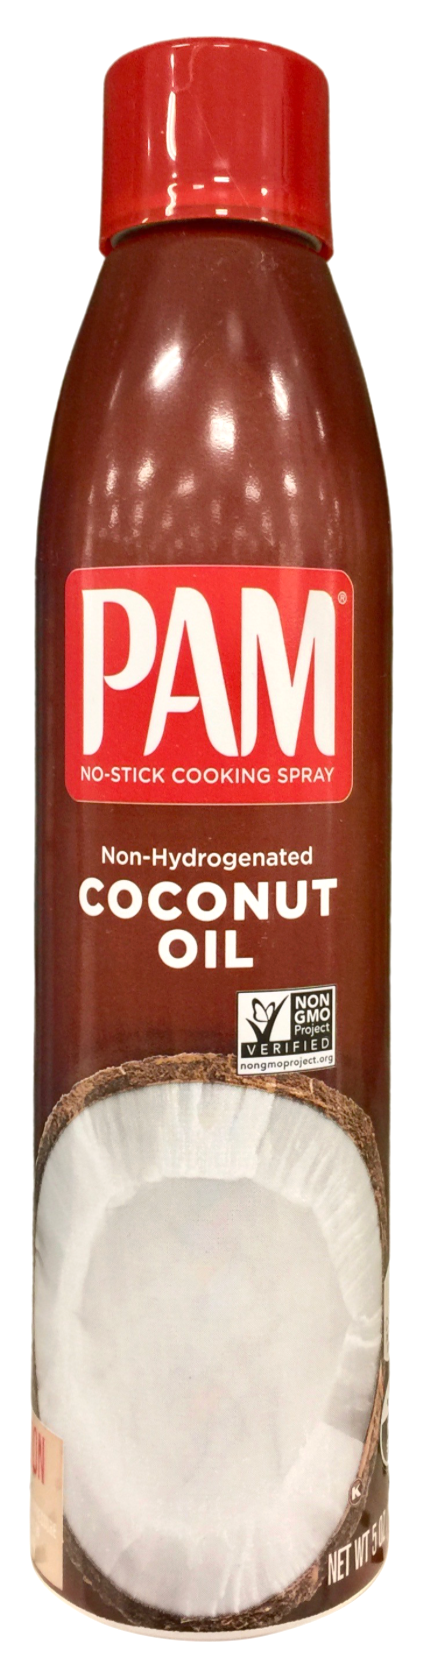 팜 PAM Non-GMO 코코넛 오일 논스틱 쿠킹 스프레이 141g